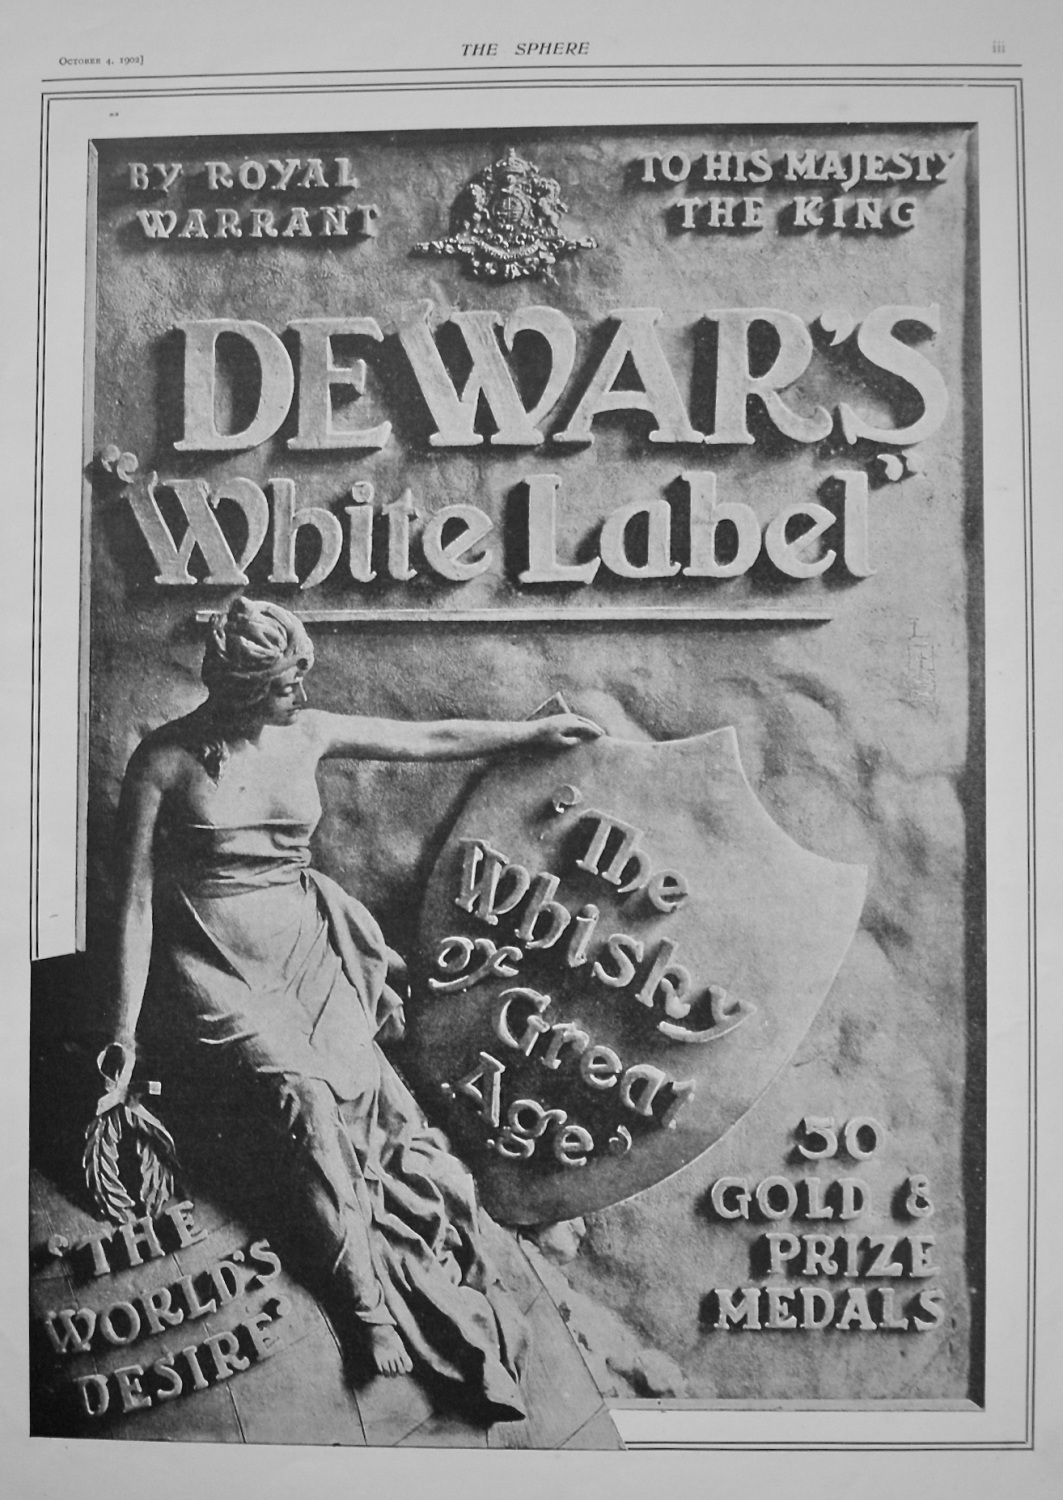 Dewar's 'White Label' Whisky. 1902